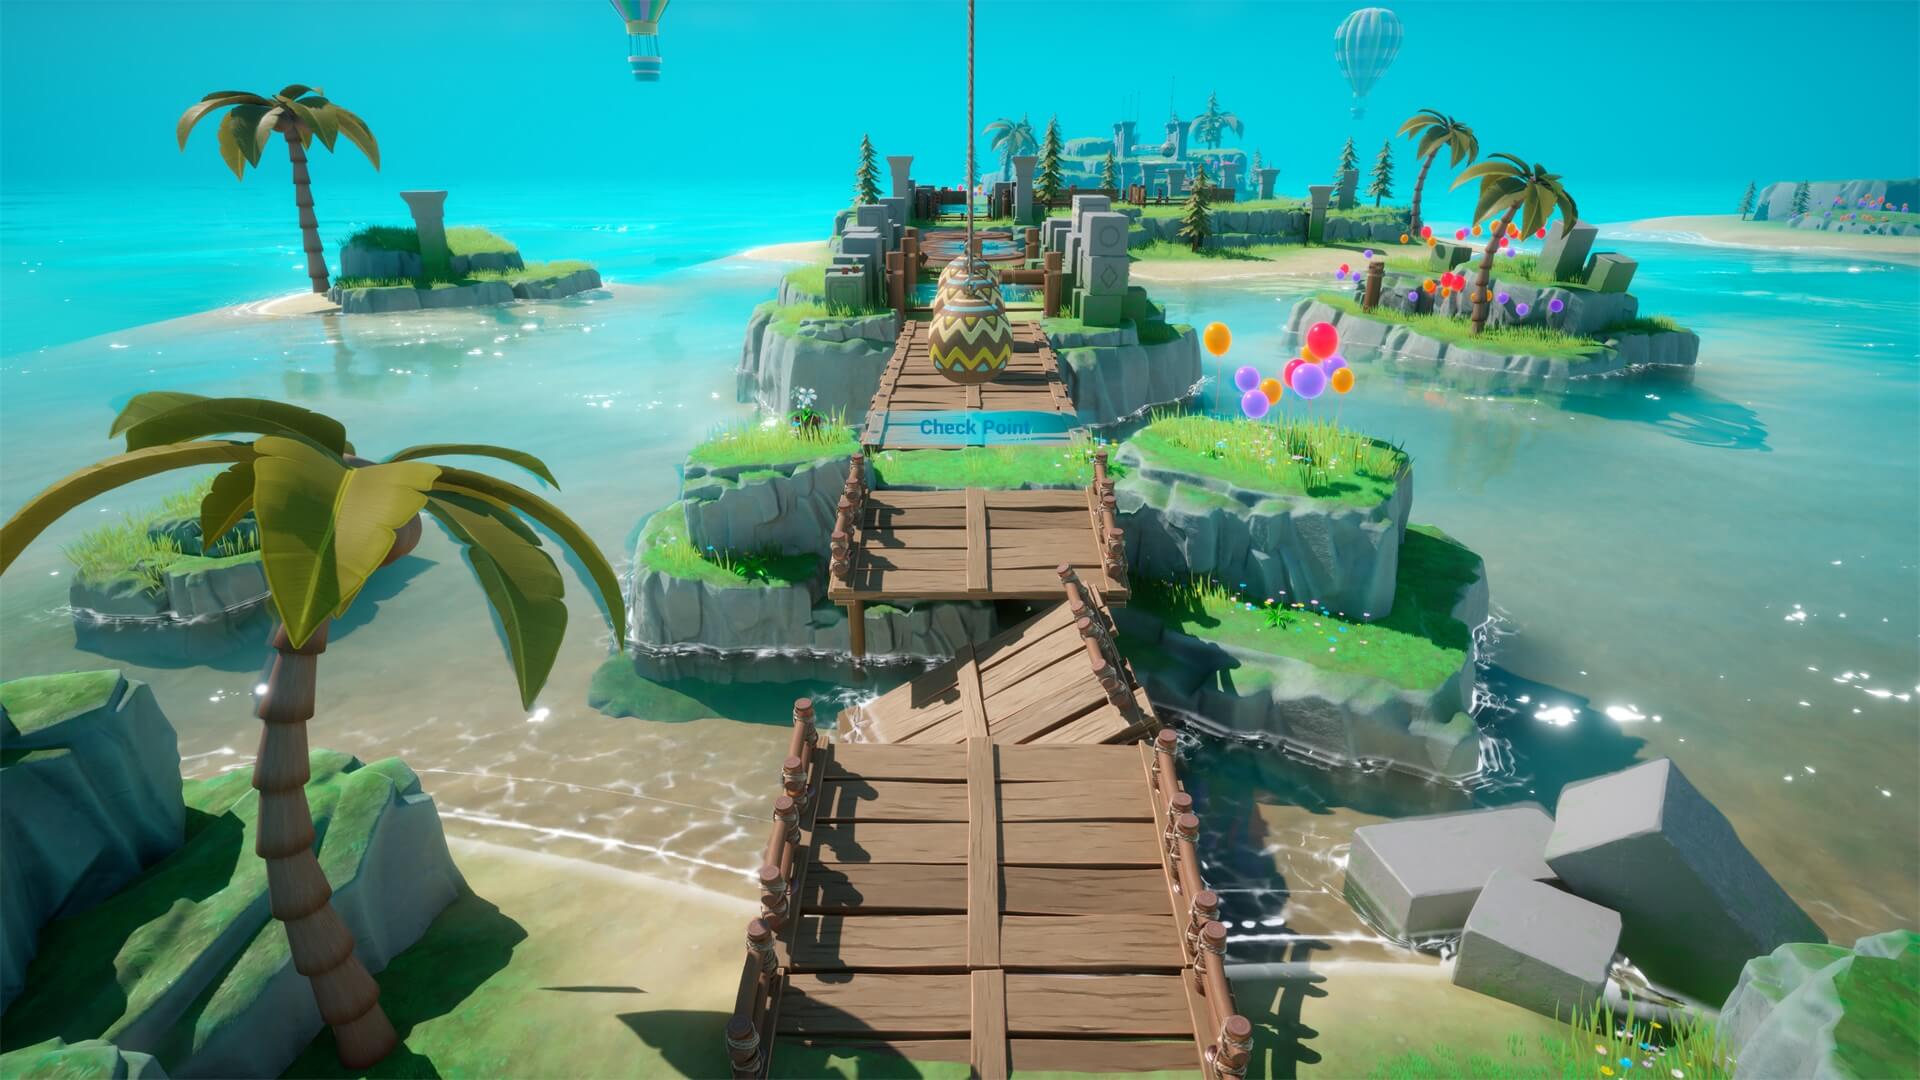 【UE5】风格化岛屿和挑战游戏系统 – Stylized island and challenge game